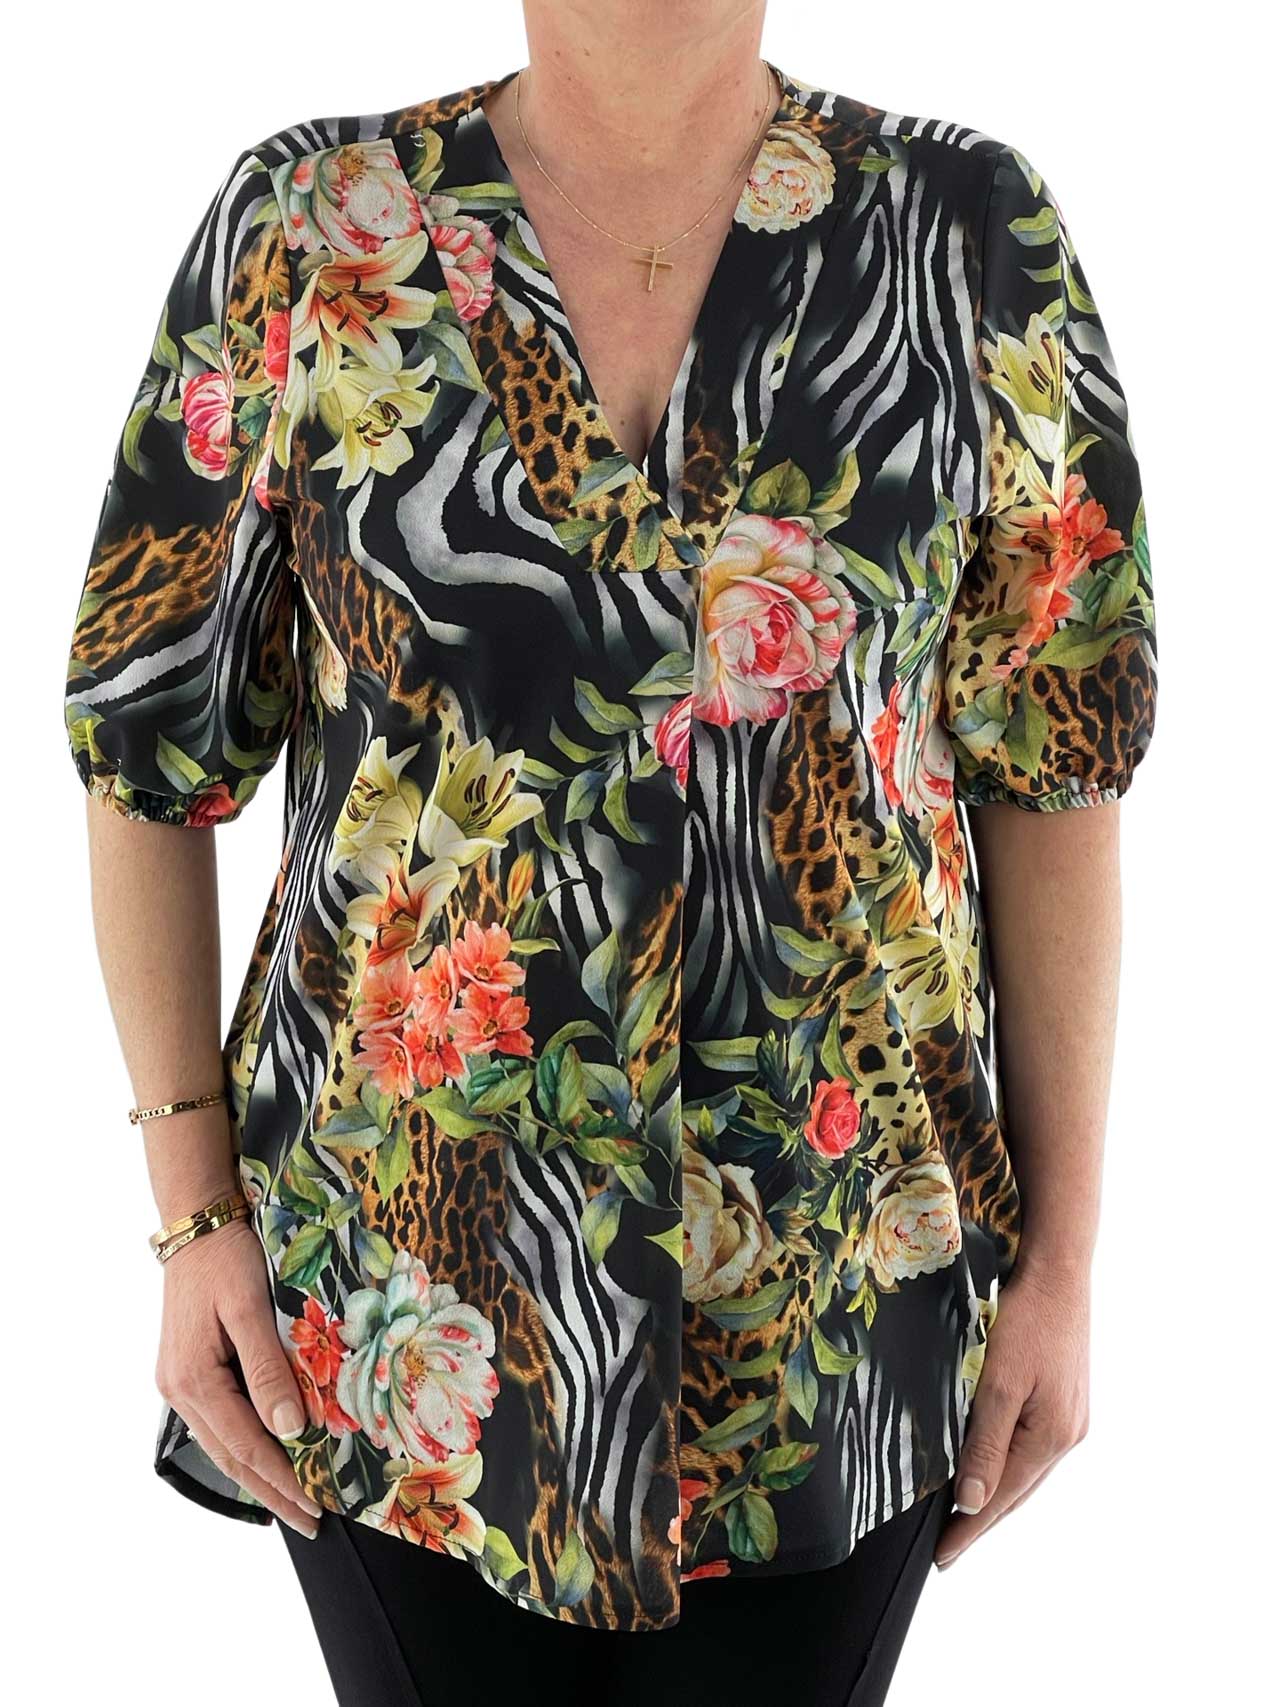 Women's shirt floral code 3663